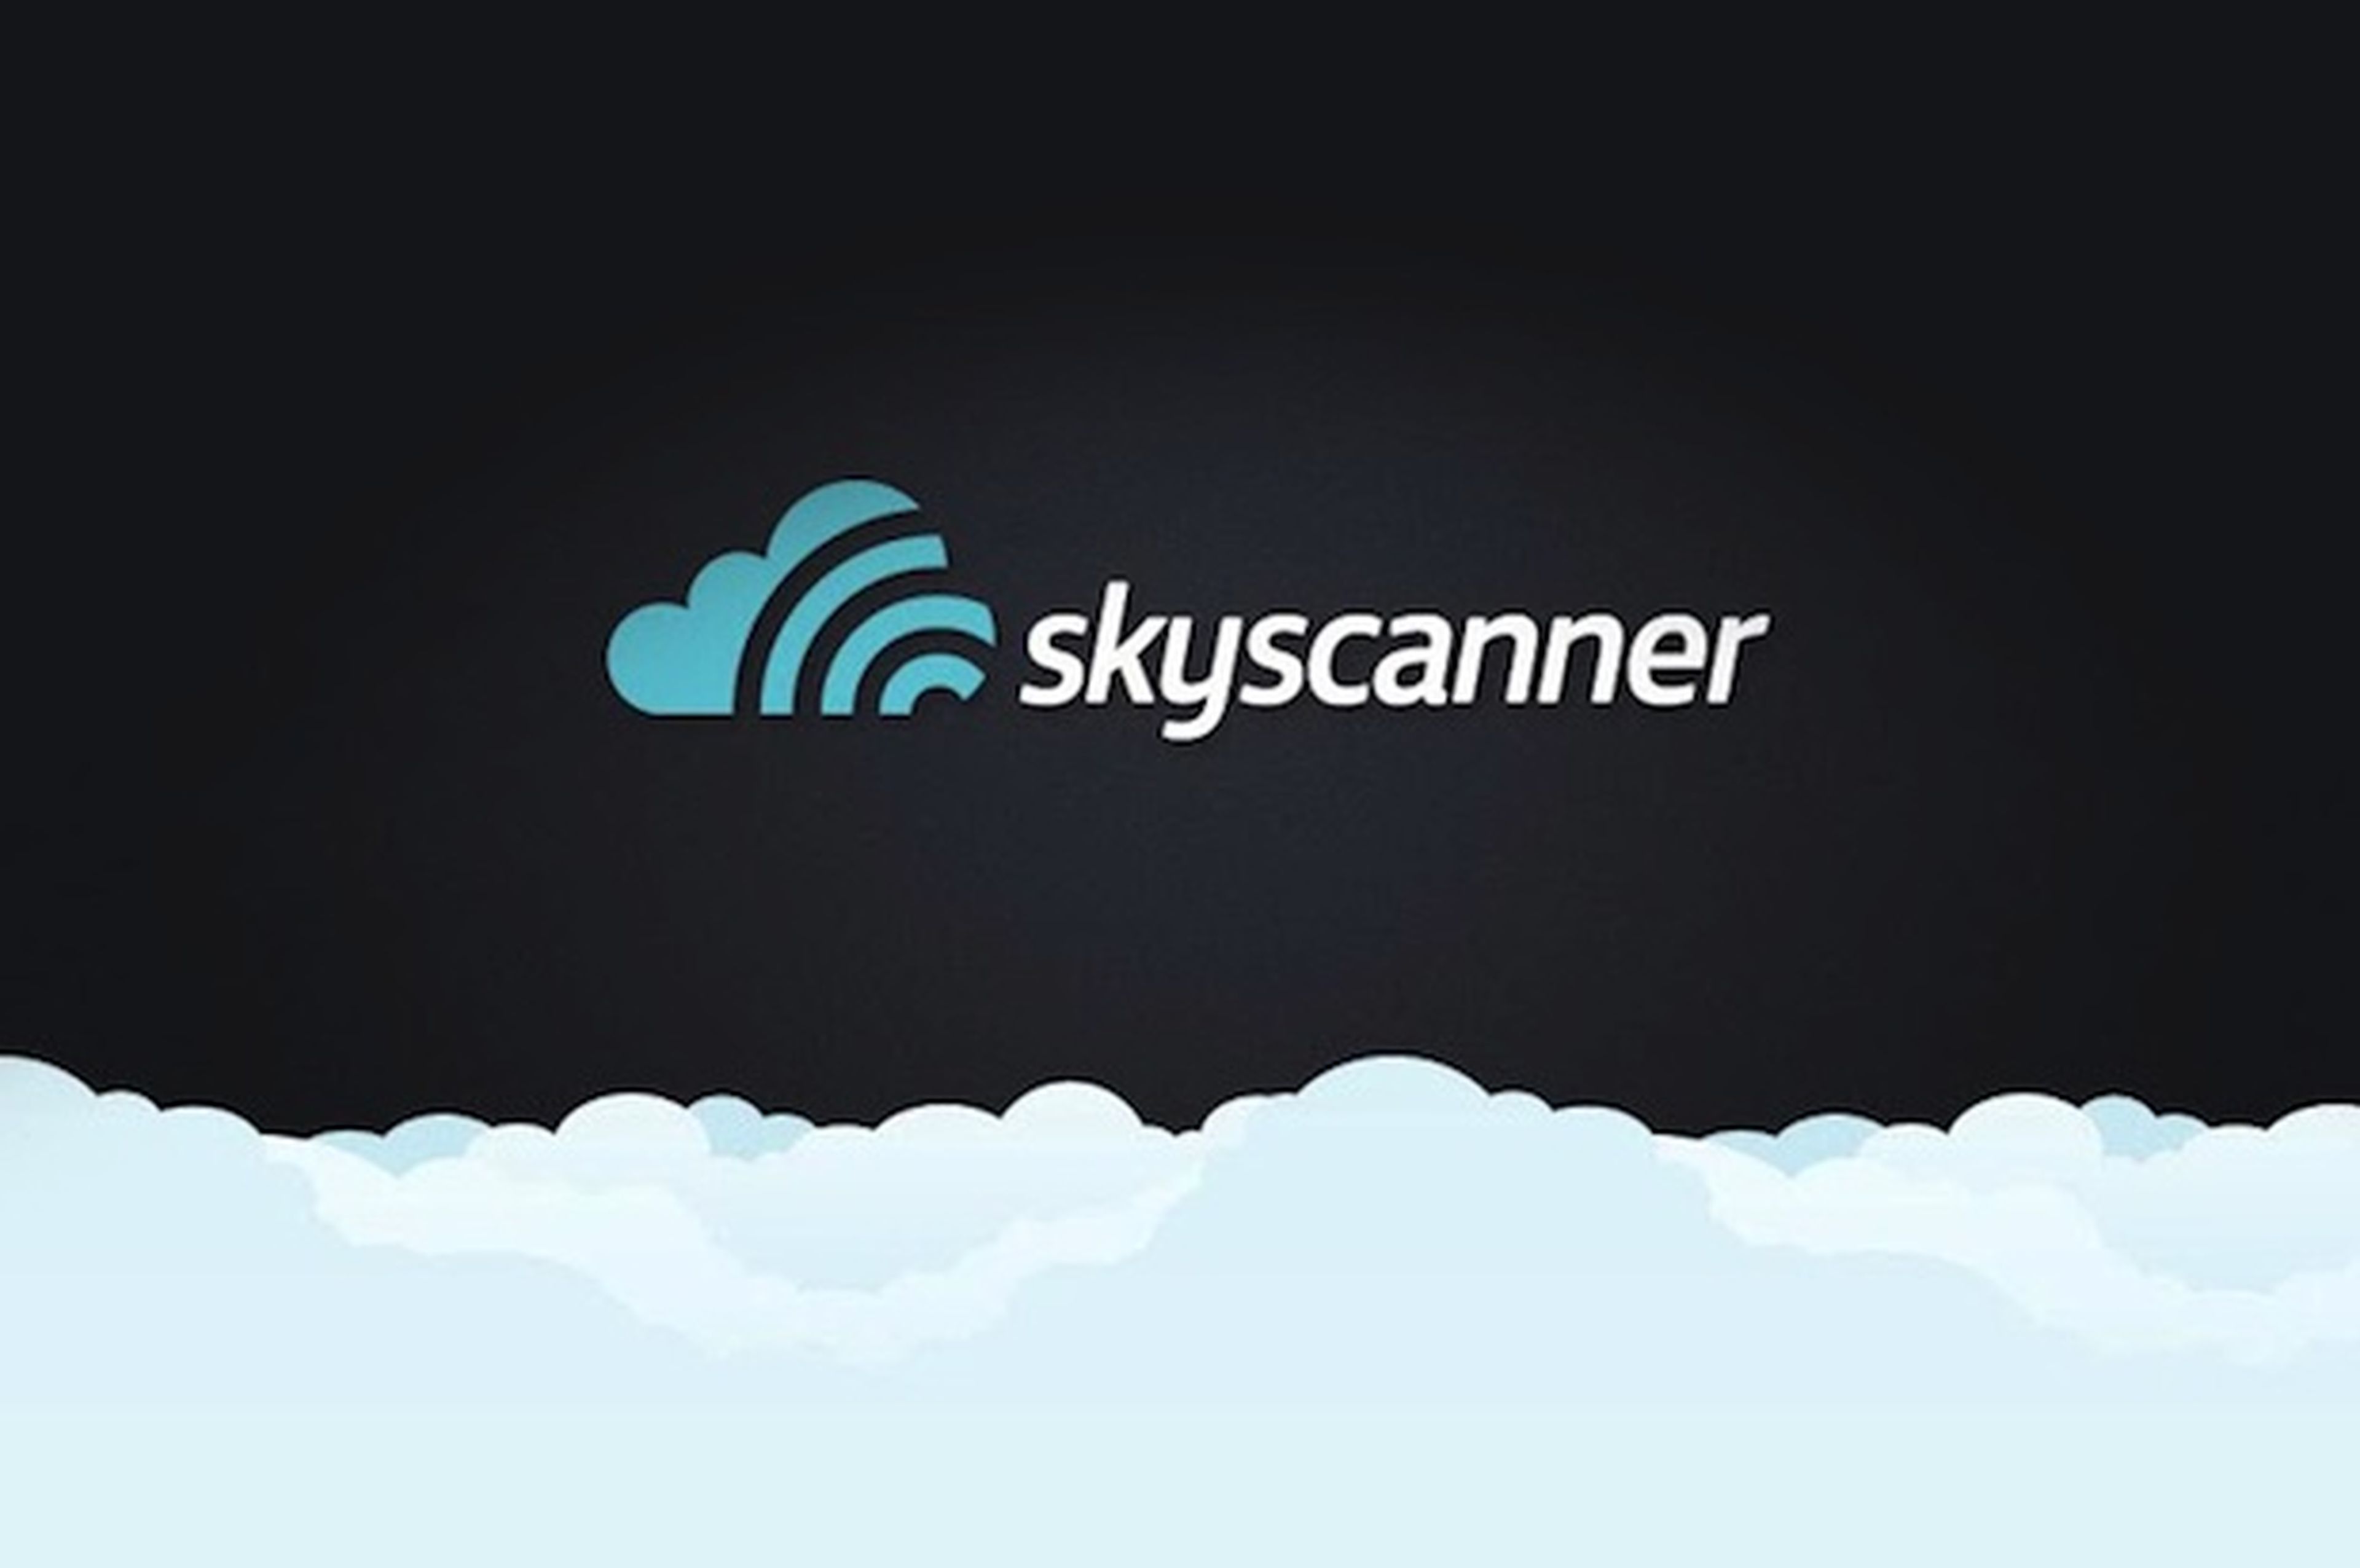 Encuentra vuelos baratos con Skyscanner